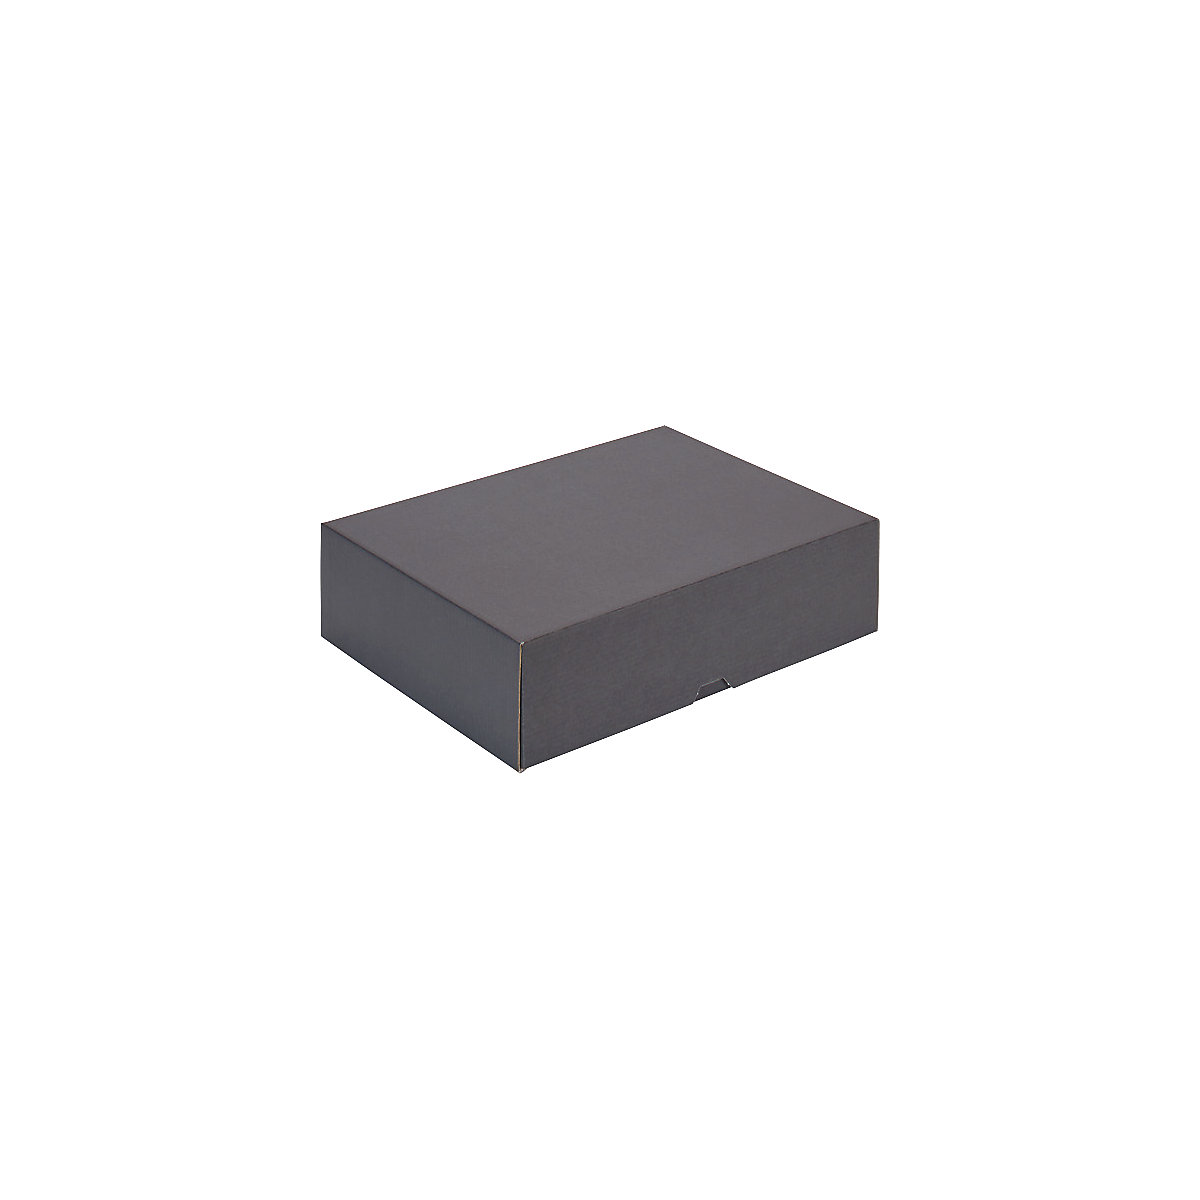 Stülpdeckelkarton, schwarz, Innenmaße 301 x 213 x 80 mm, ab 12 Stk-1